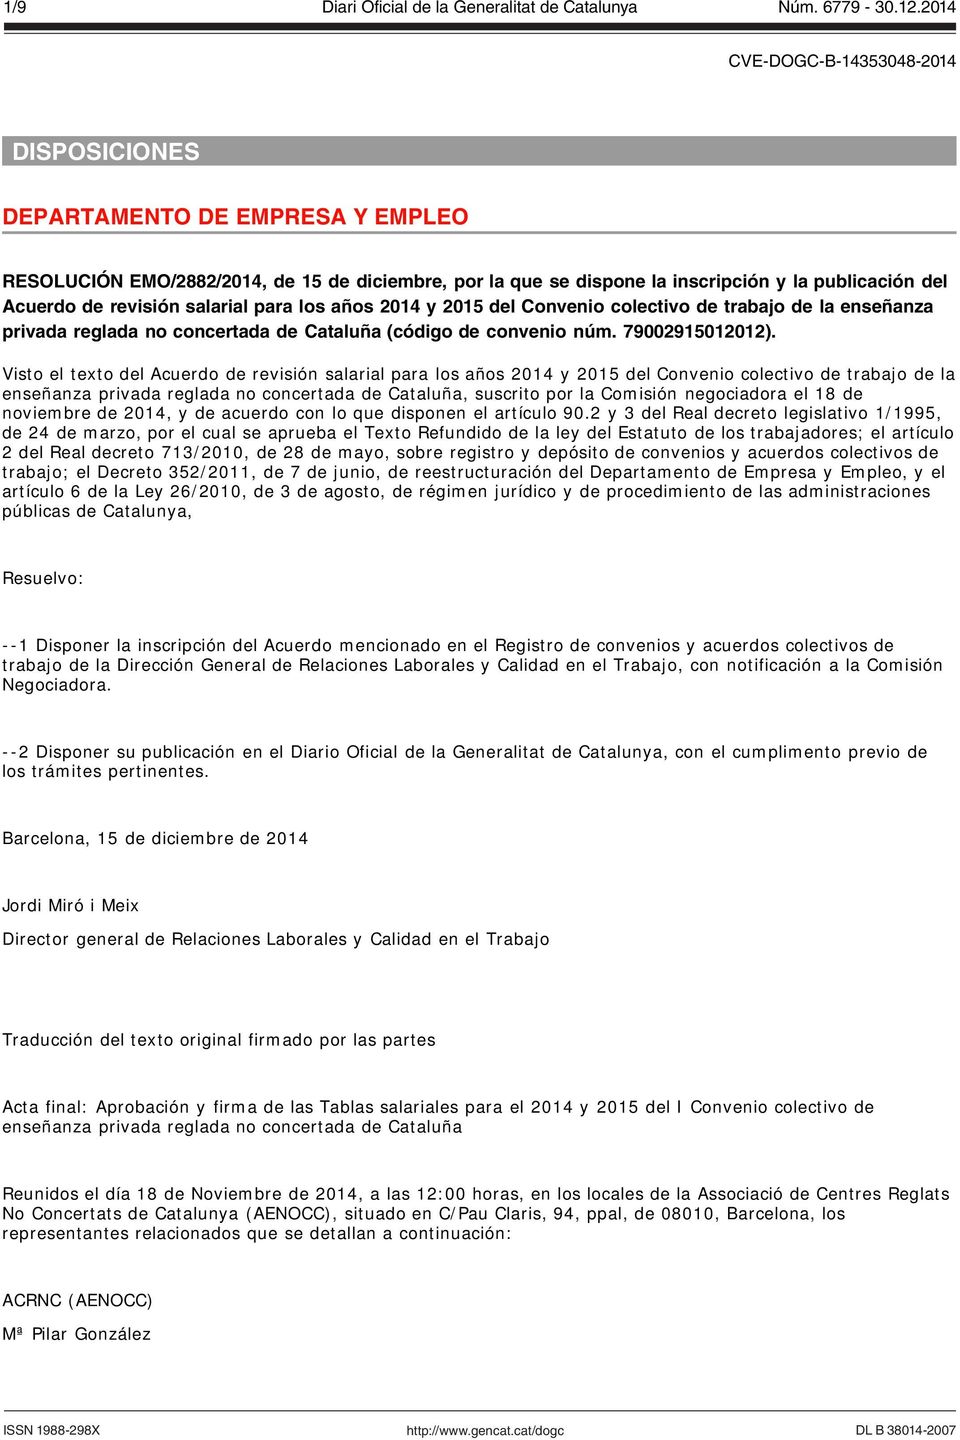 Visto el texto del Acuerdo de revisión salarial para los años 2014 y 2015 del Convenio colectivo de trabajo de la enseñanza privada reglada no concertada de Cataluña, suscrito por la Comisión